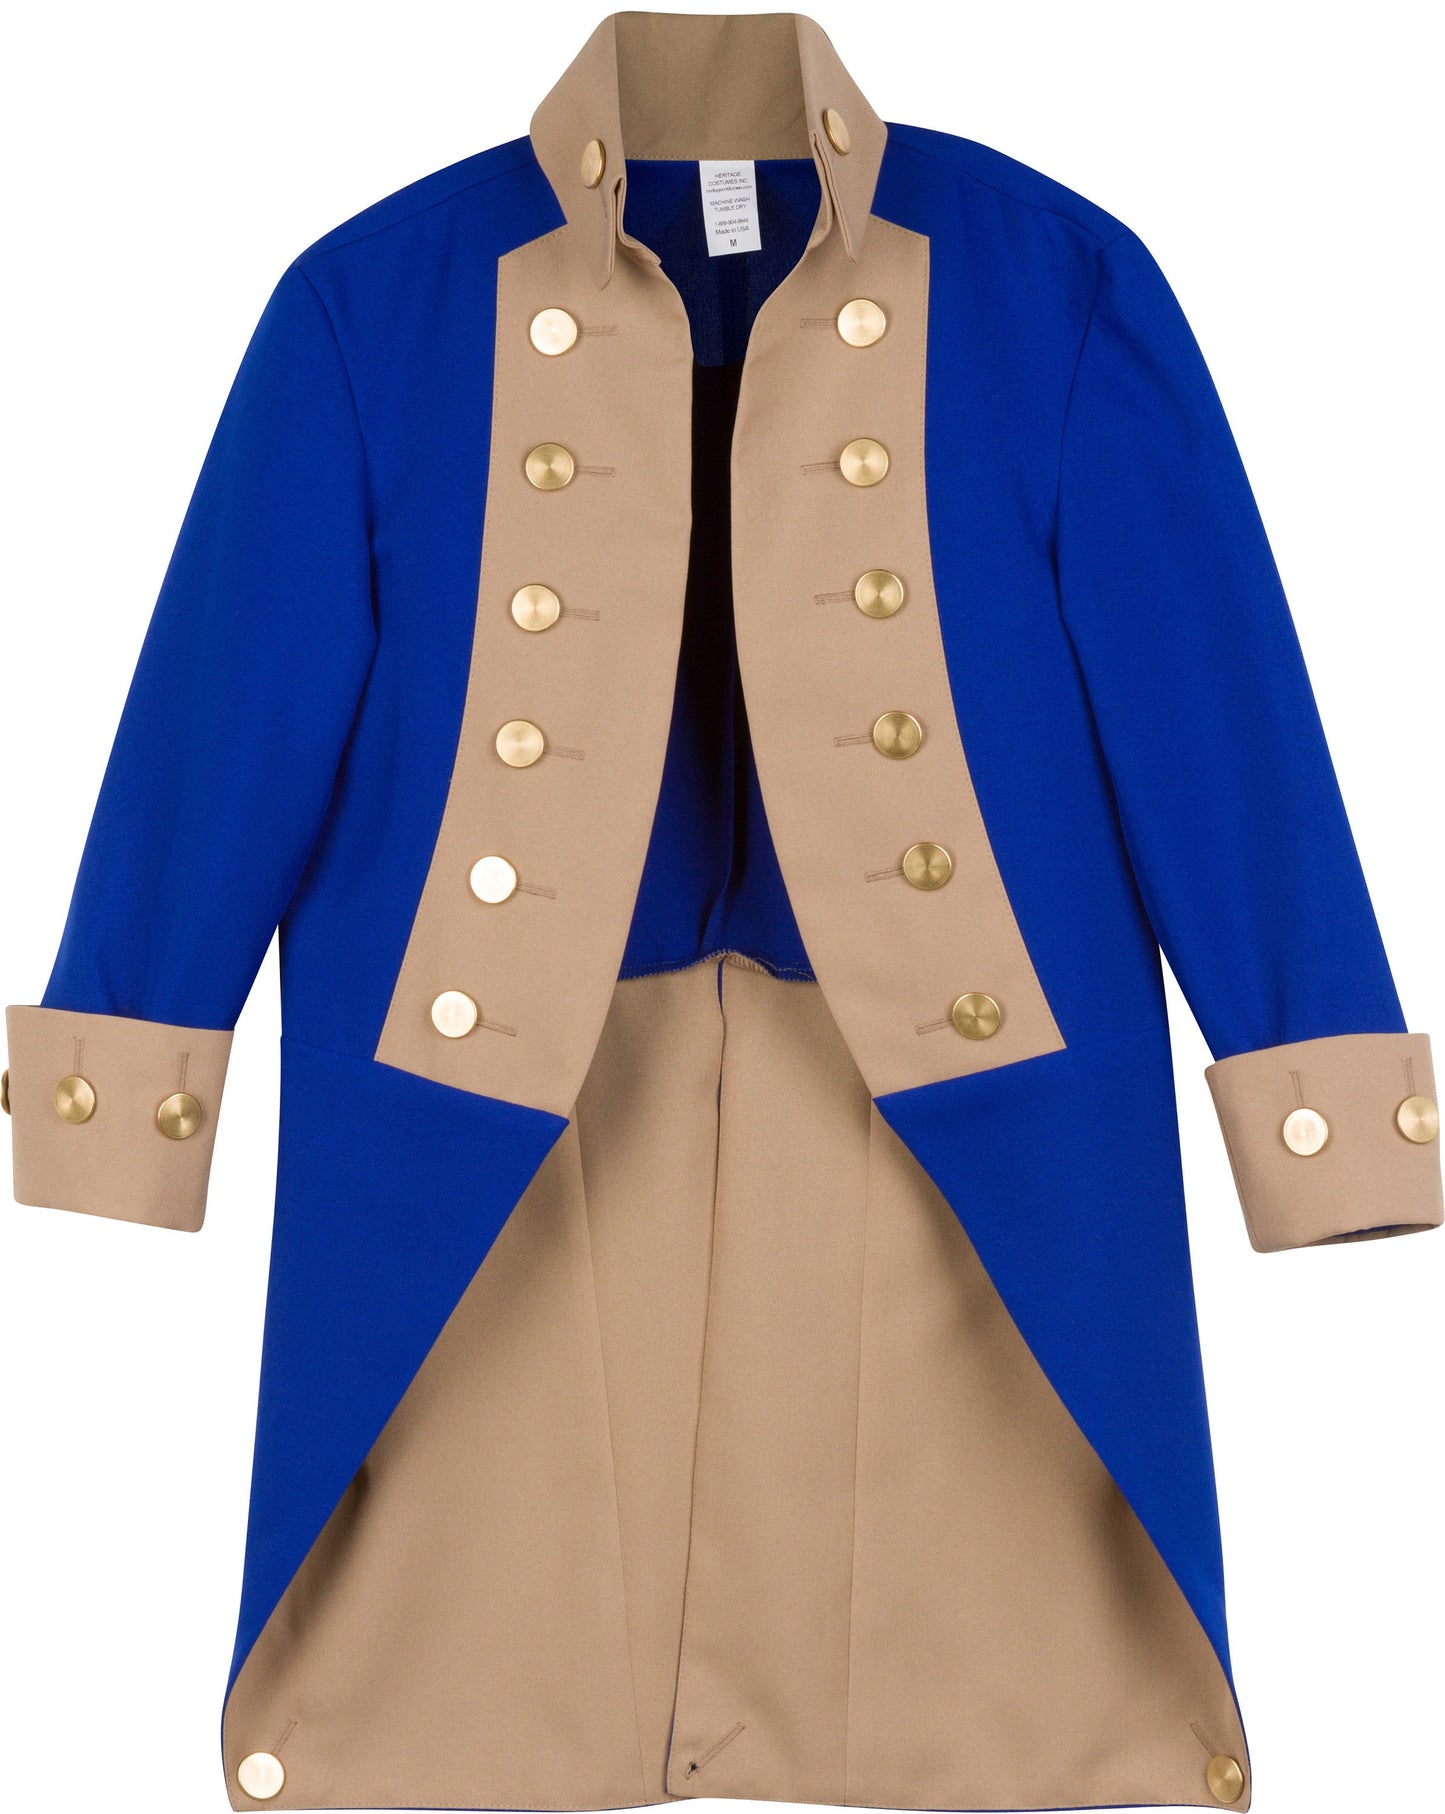 American Revolutionary War Officer's Jacket